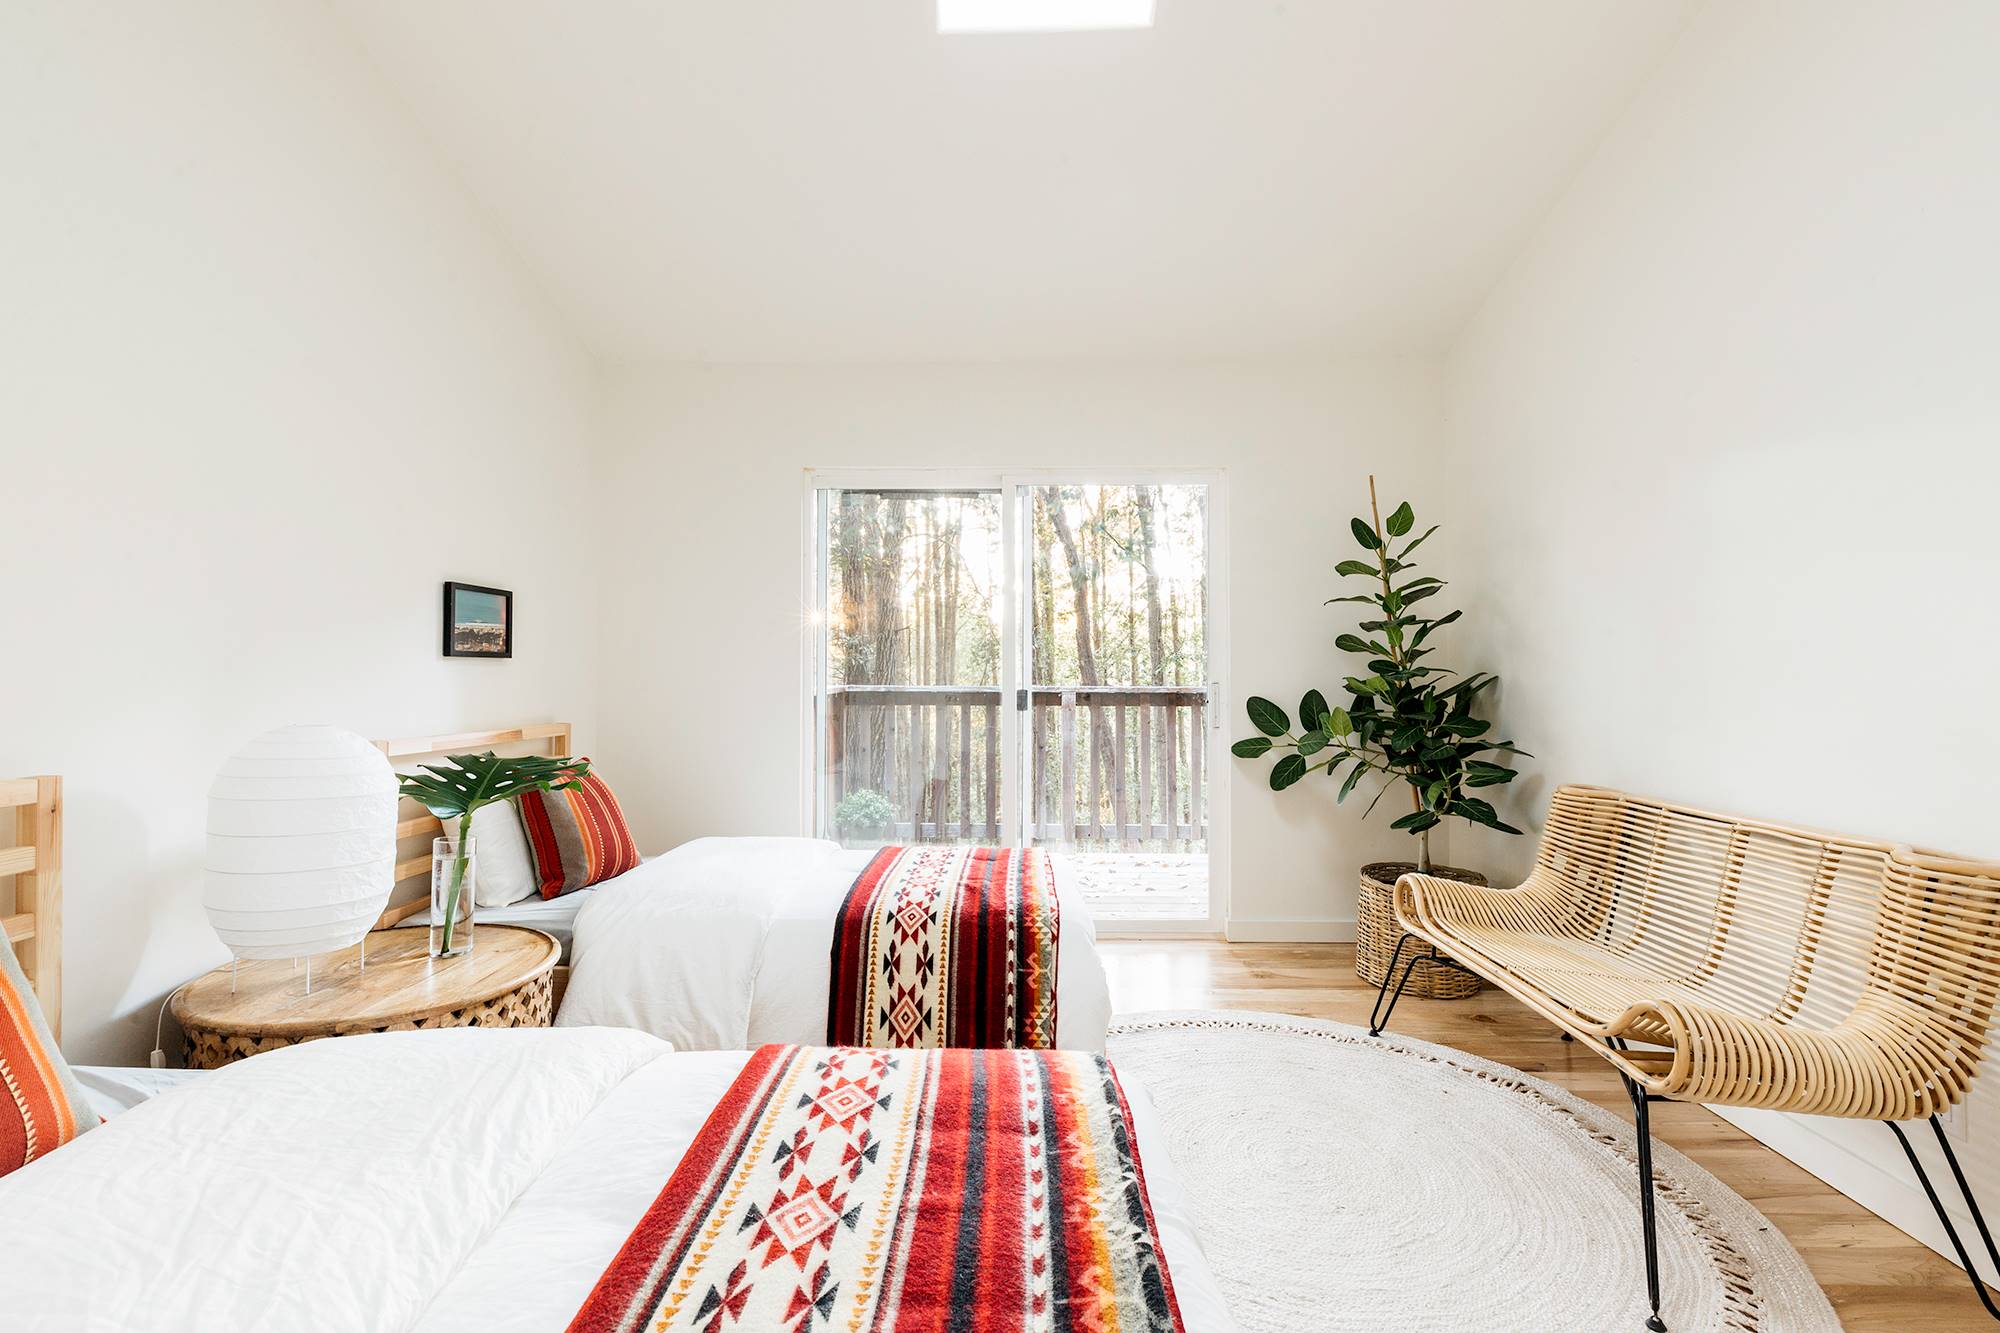 Dormitorio con dos camas de madera, ropa de cama étnica, un banco de madera y plantas